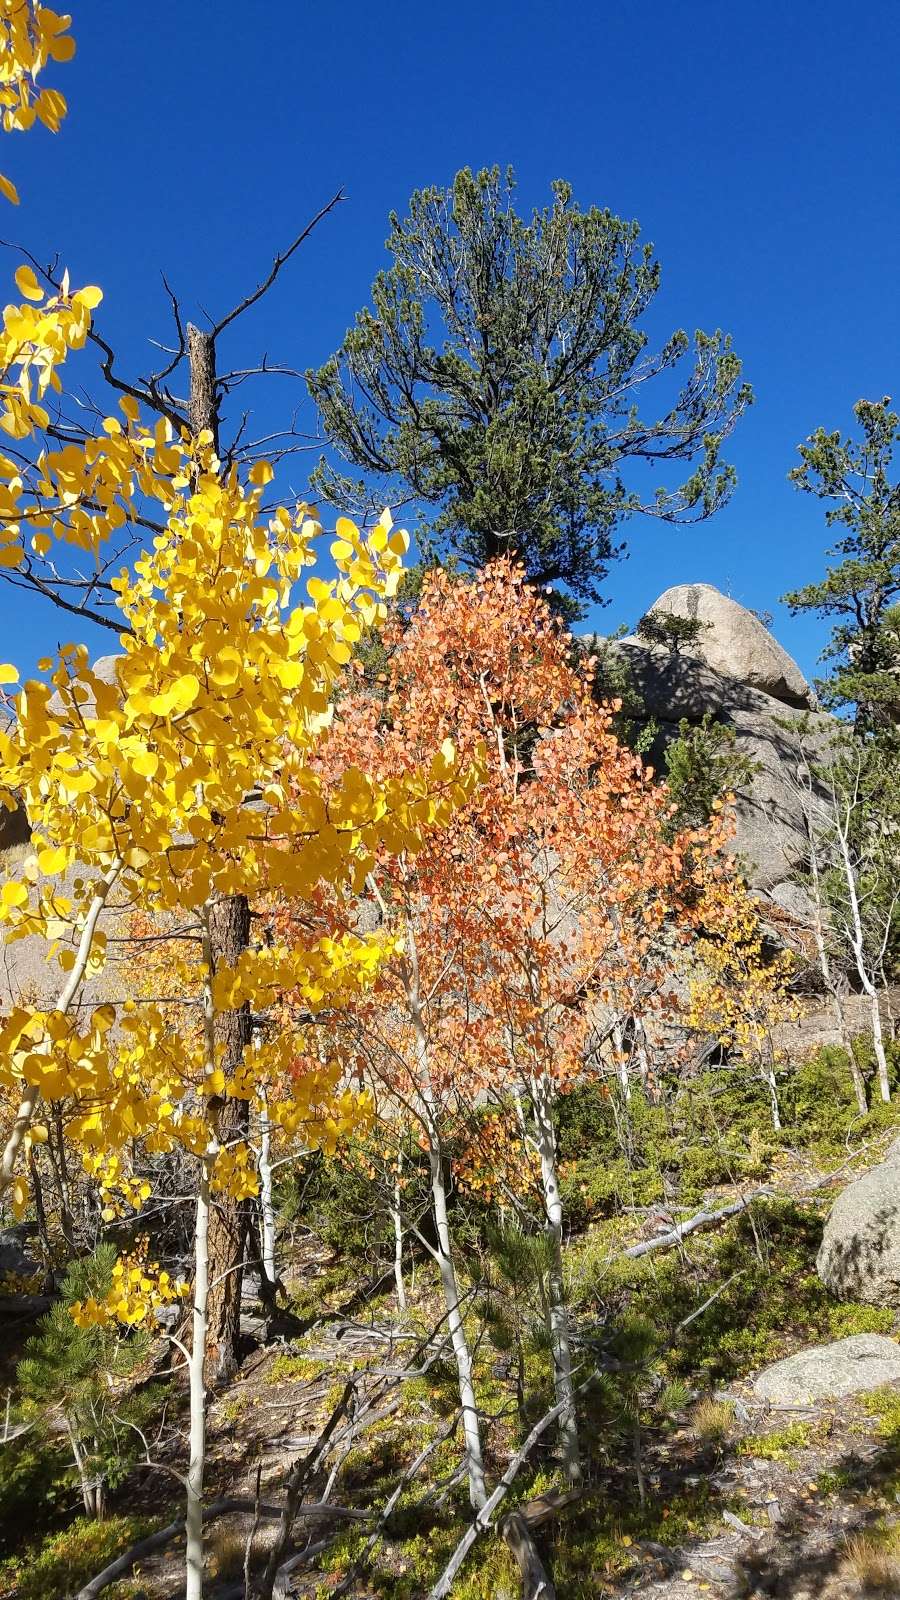 Balanced Rock | Balanced Rock Trail, Estes Park, CO 80517, USA